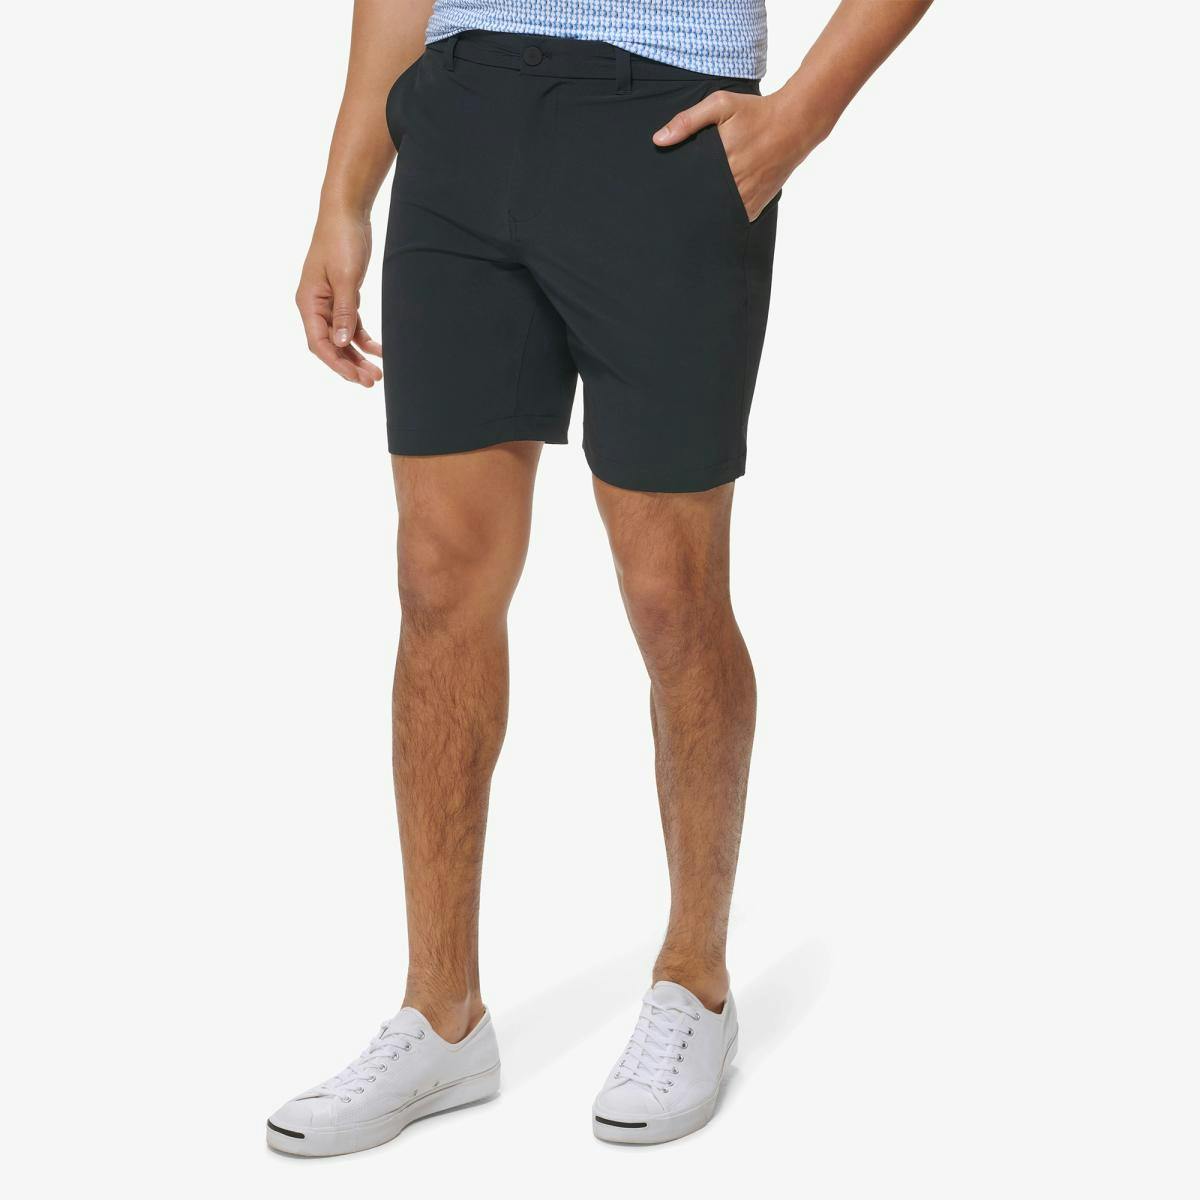 Helmsman Shorts - Product Image 2